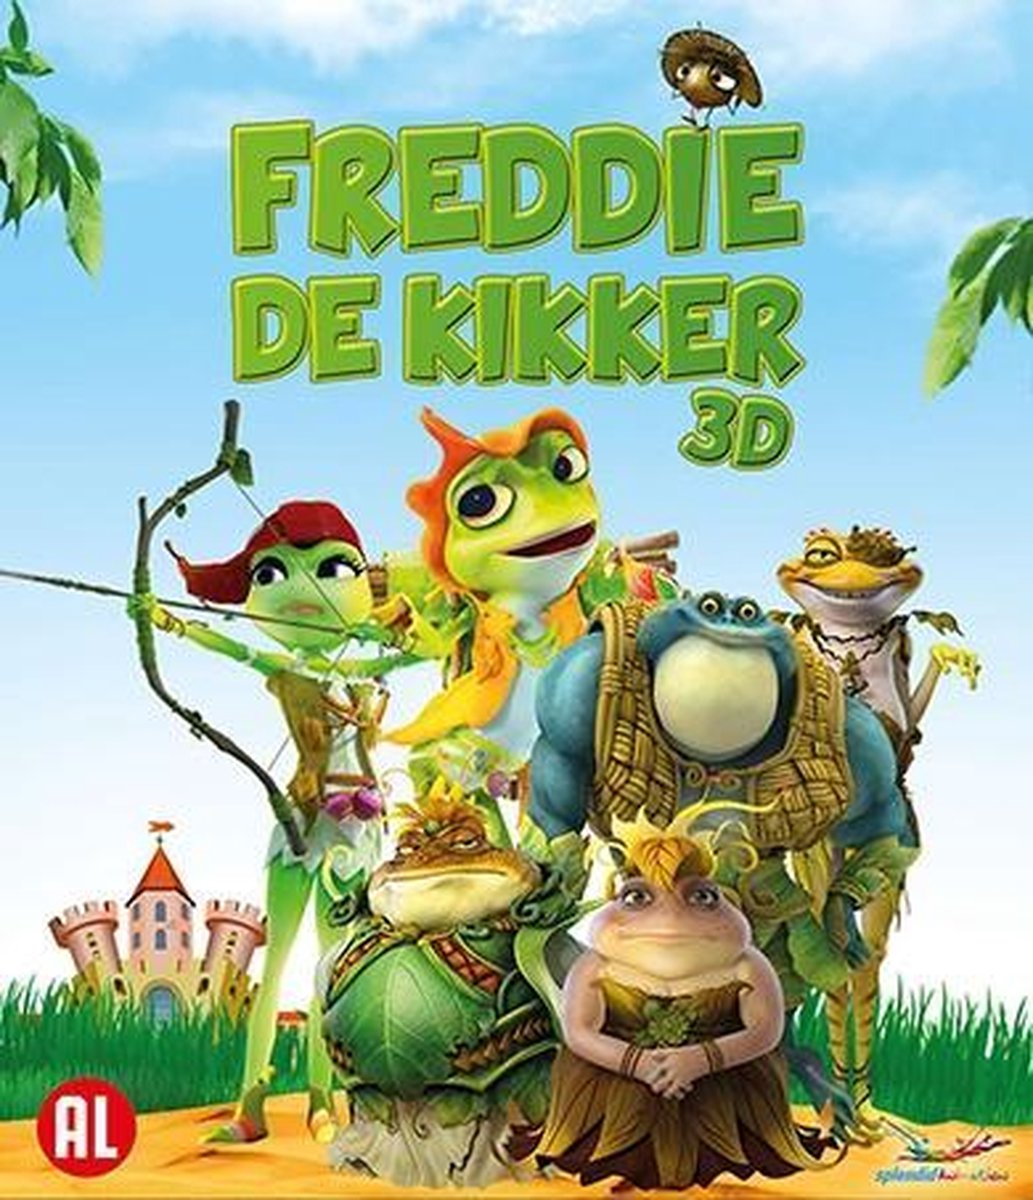 Freddie De Kikker (Blu-ray)